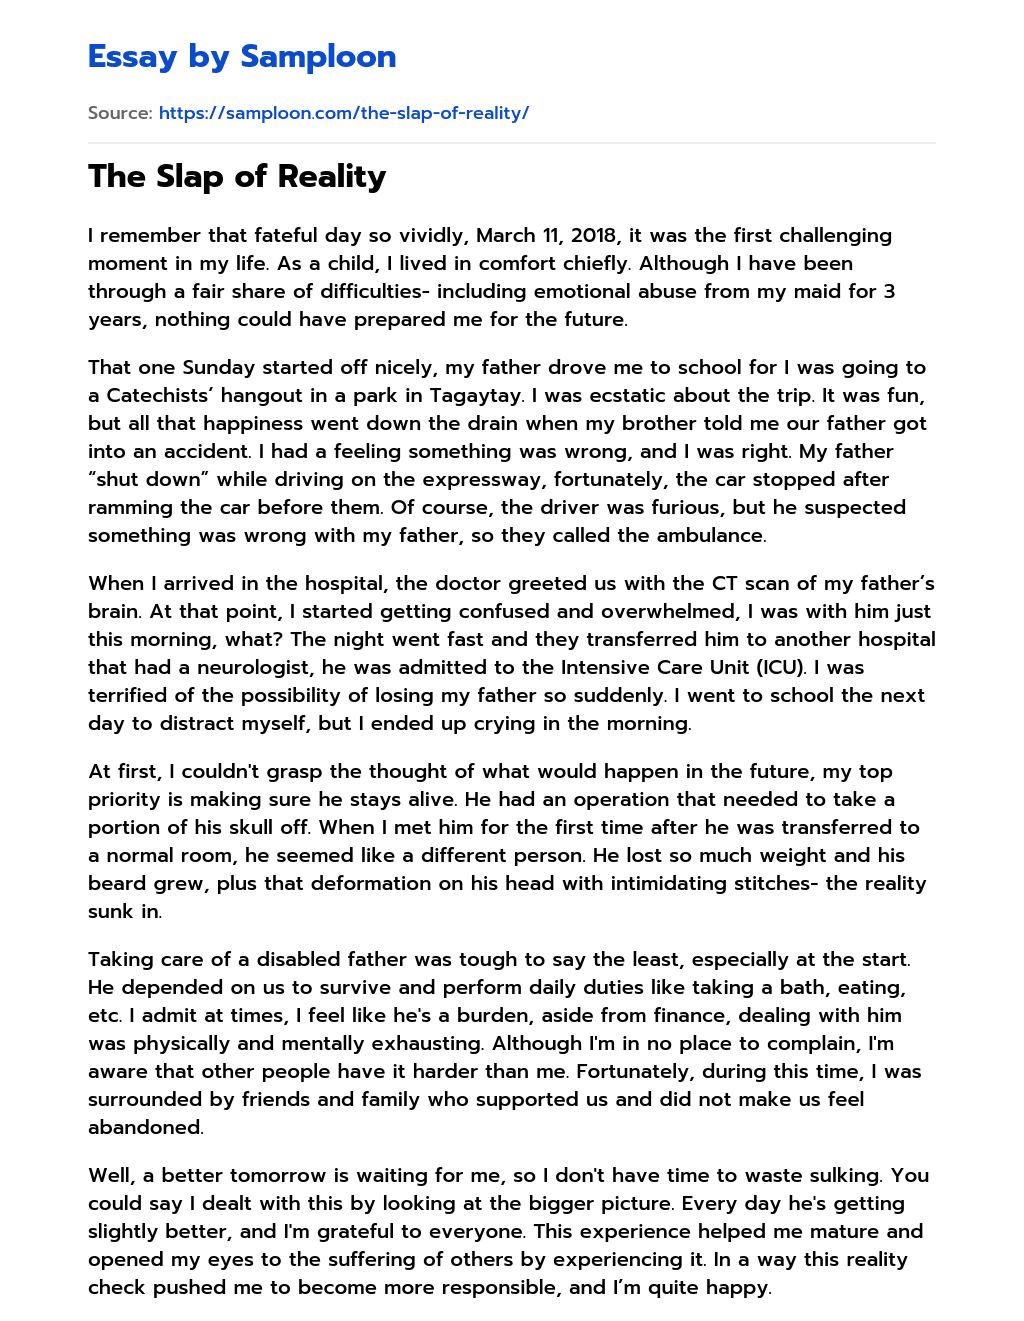 The Slap of Reality essay